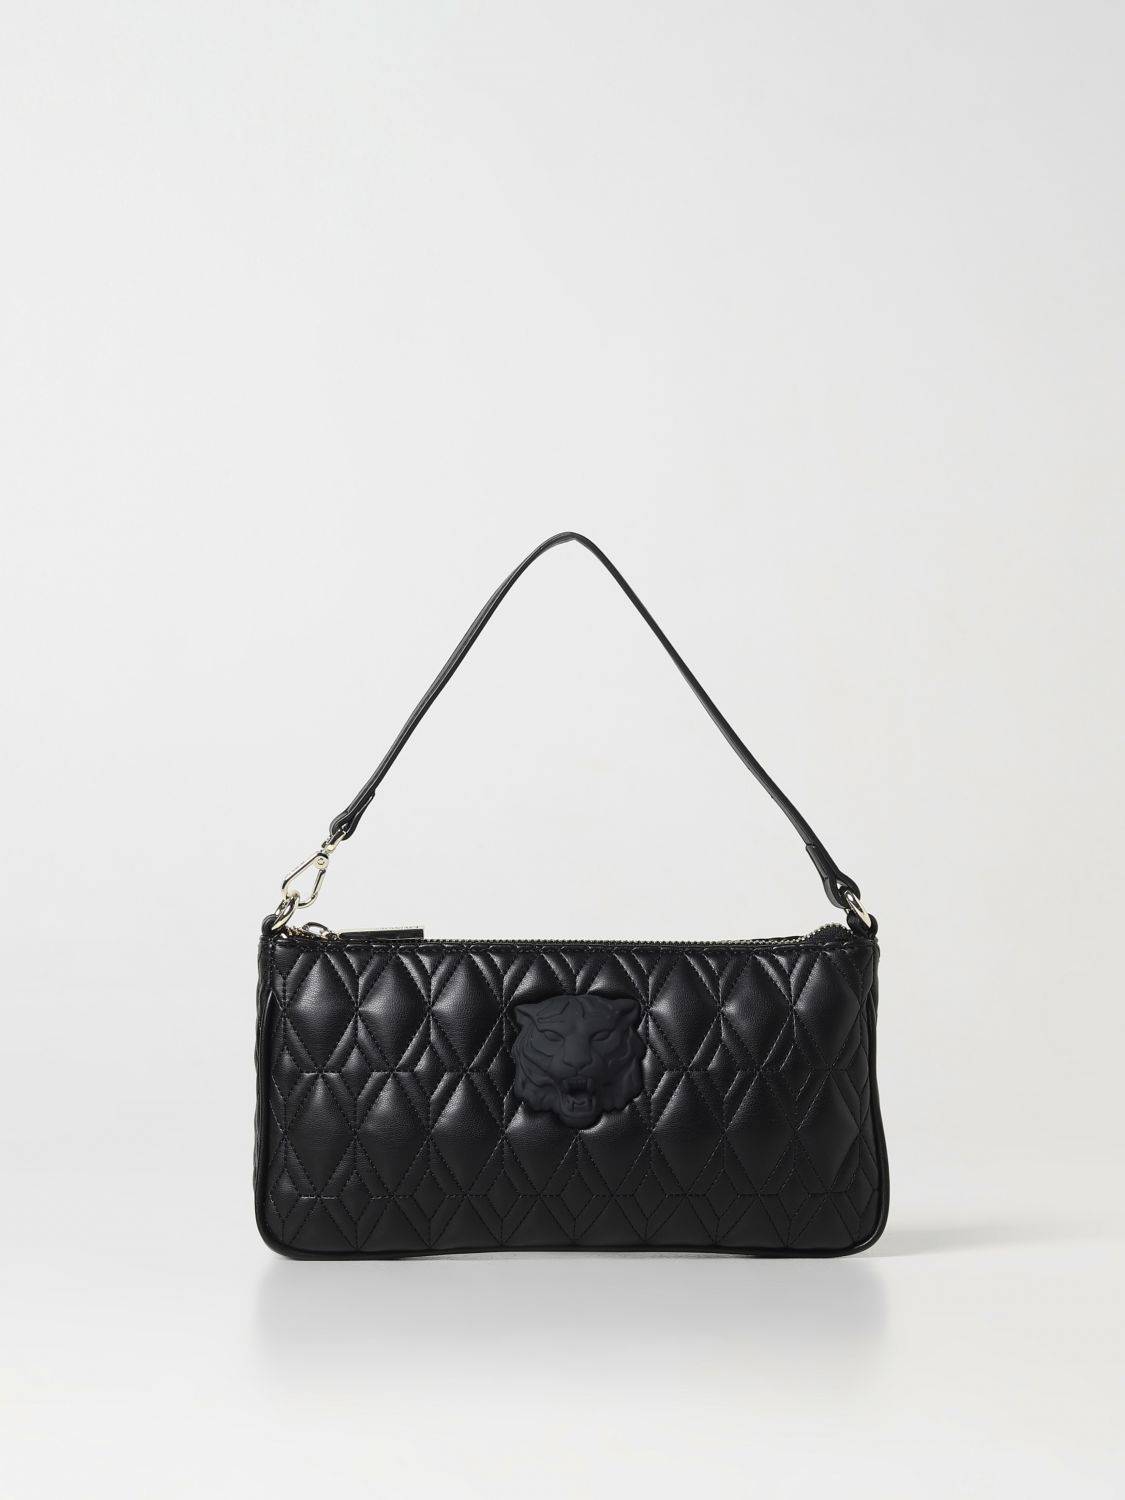 Just Cavalli Handbag JUST CAVALLI Woman colour Black